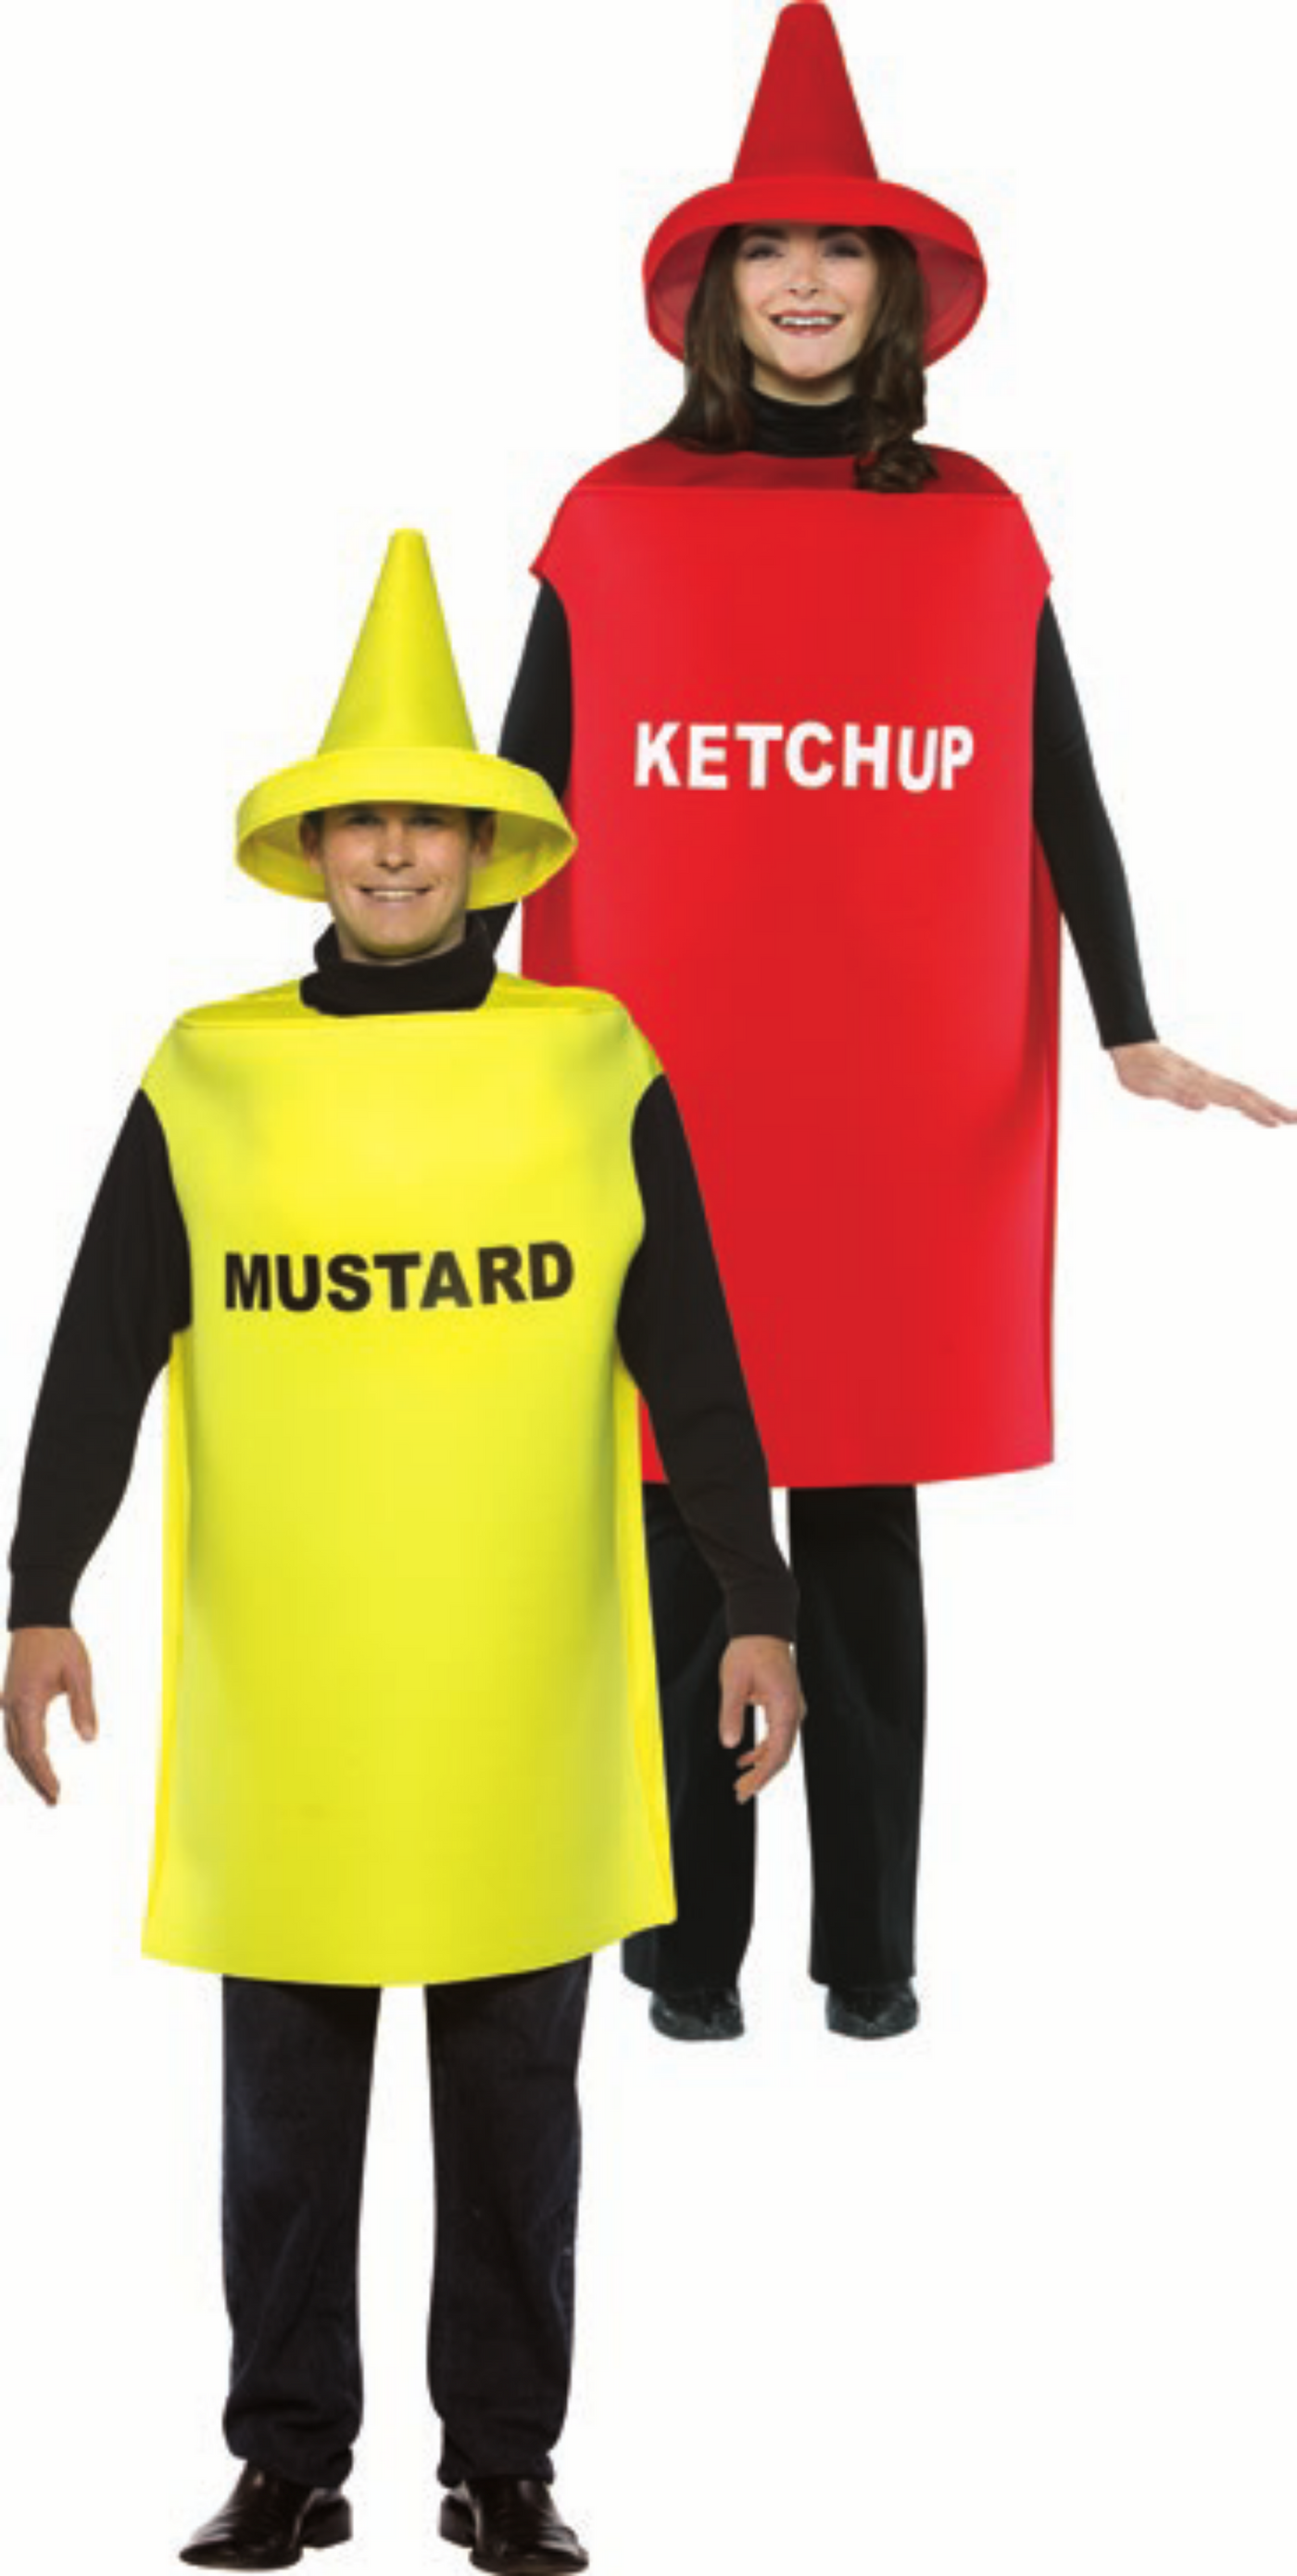 Ketchup and Mustard Costumes